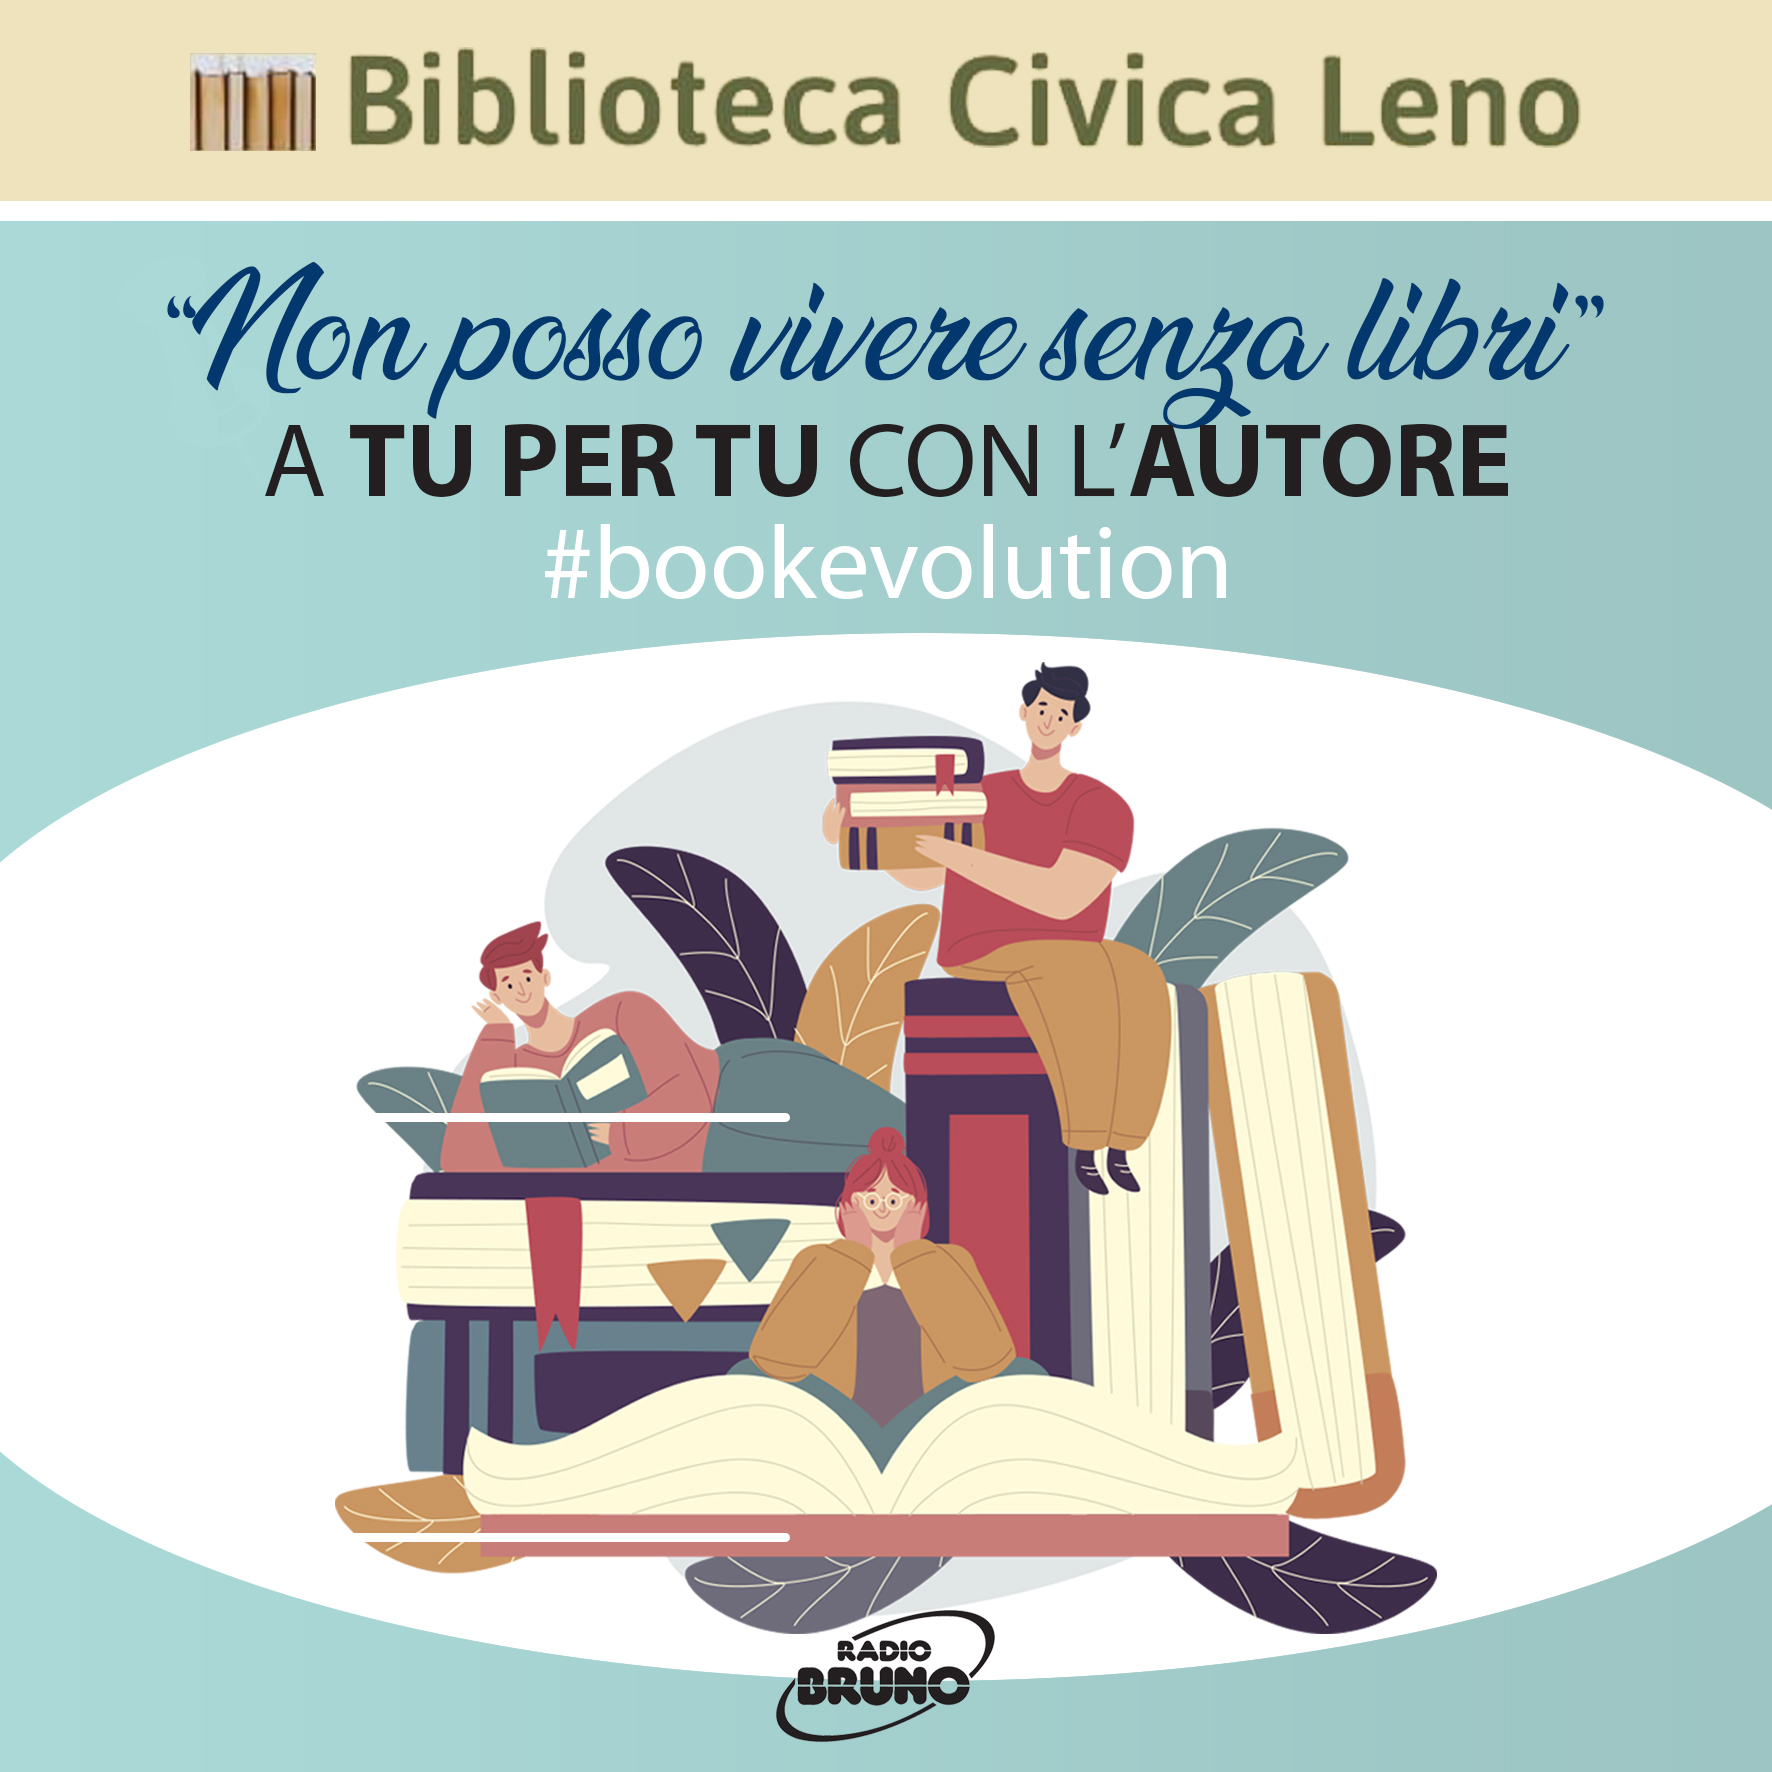 La Biblioteca Civica di Leno e Radio Bruno insieme con “Non posso vivere senza libri”